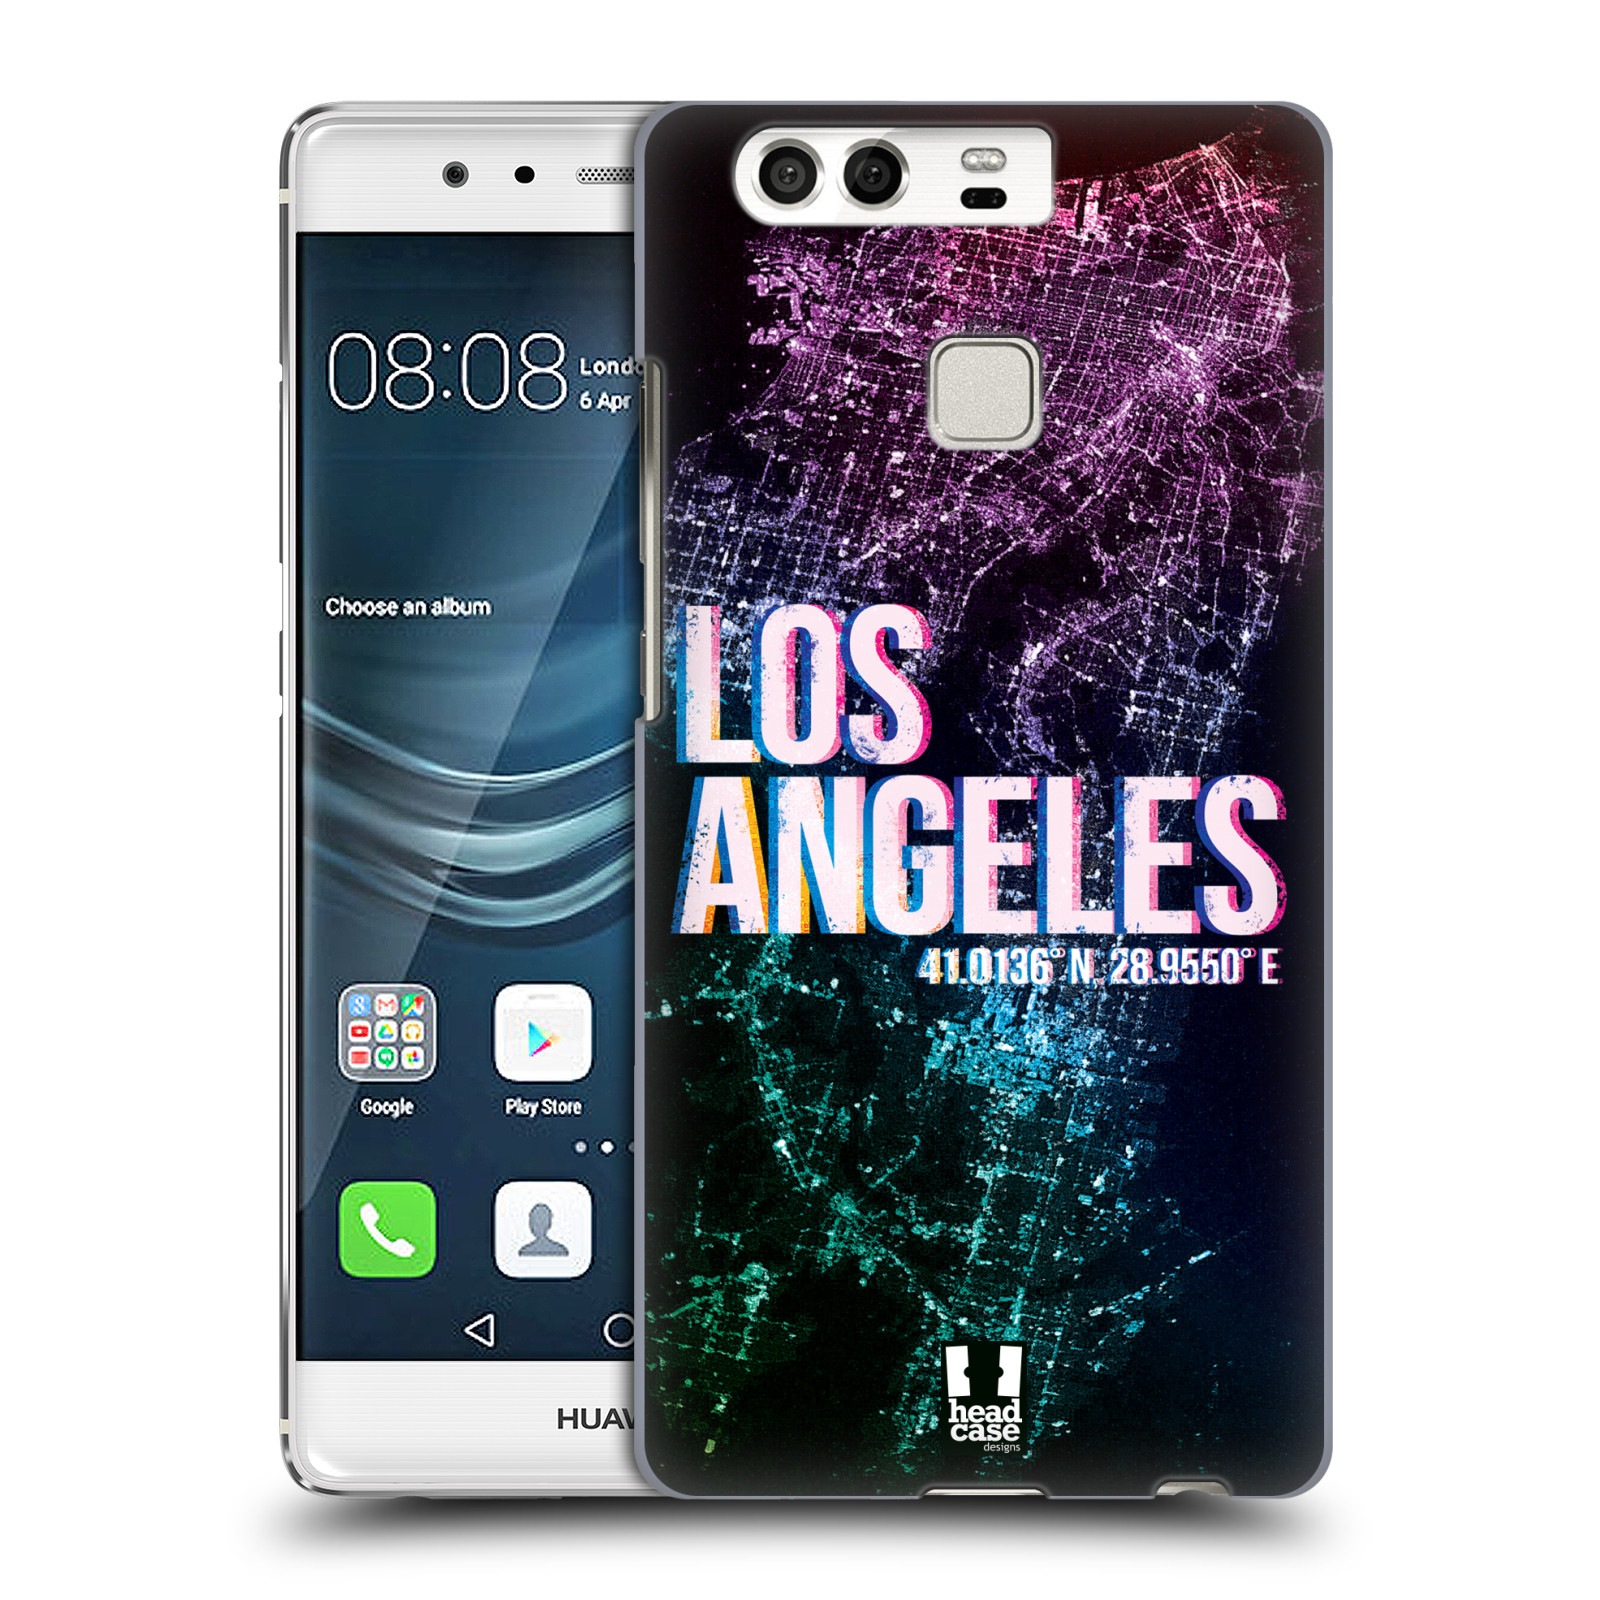 HEAD CASE plastový obal na mobil Huawei P9 / P9 DUAL SIM vzor Světla známých měst, Satelitní snímky fialová USA, LOS ANGELES